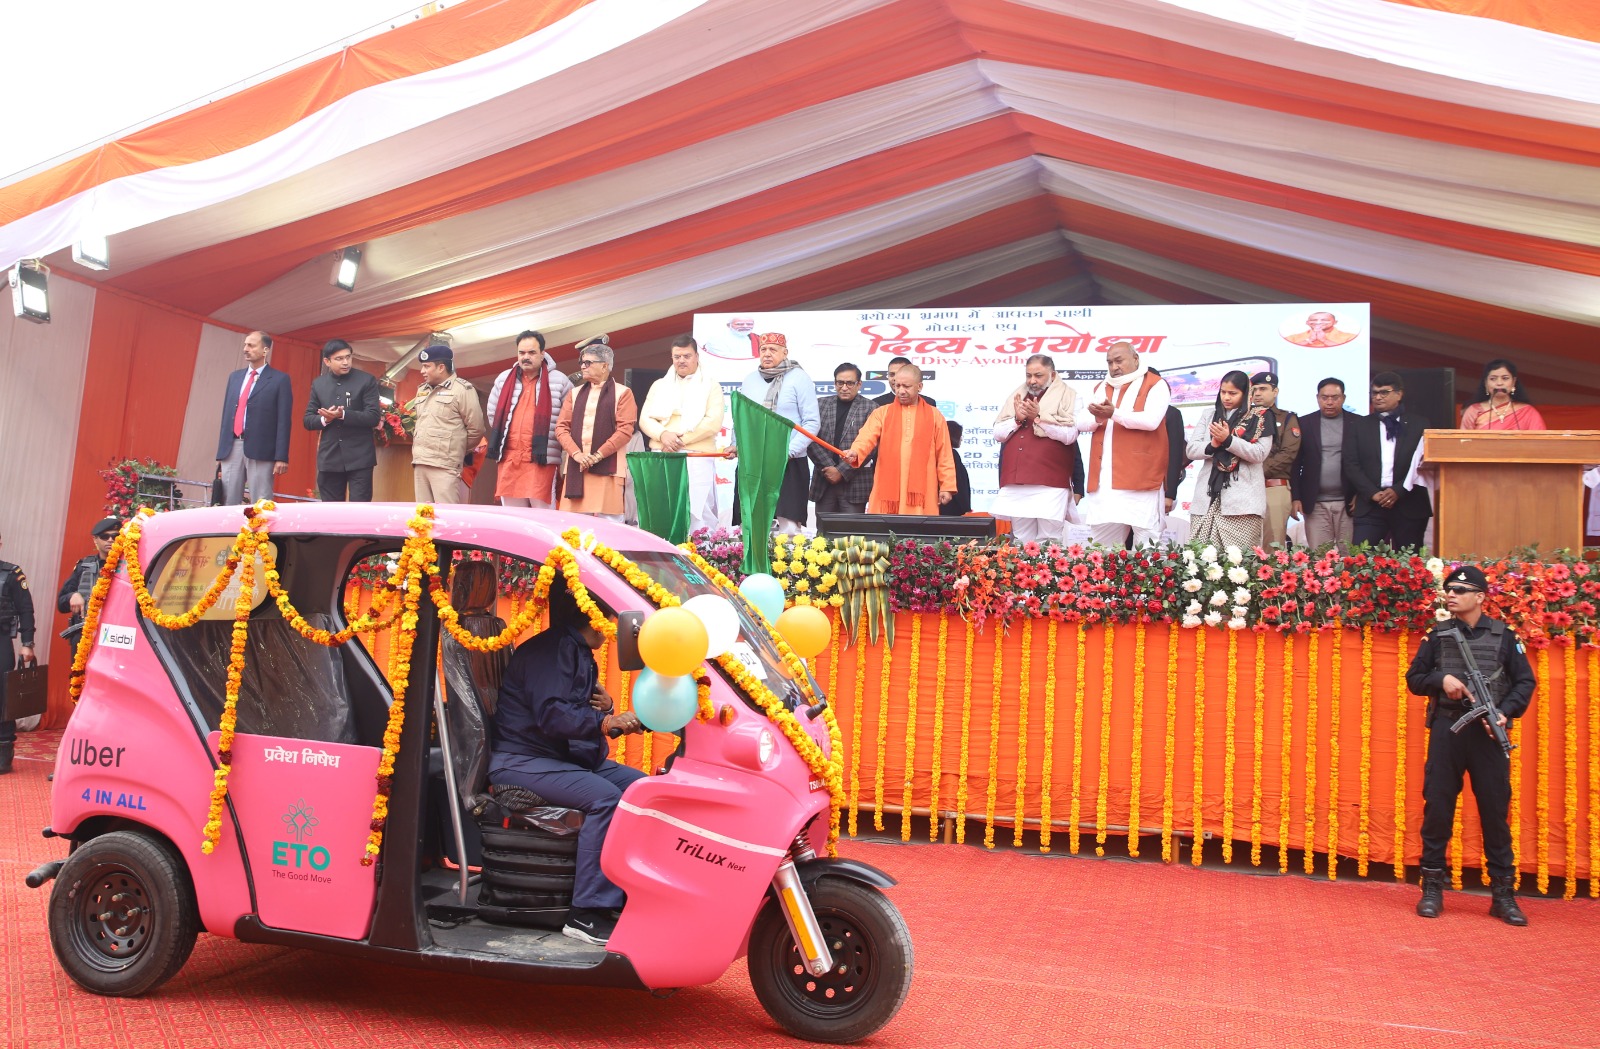 अयोध्या राम मंदिर : 75 ई-वाहनों की शुरुआत, श्रद्धालुओं की सुविधा के लिए डिजिटल टूरिस्ट ऐप लॉन्च